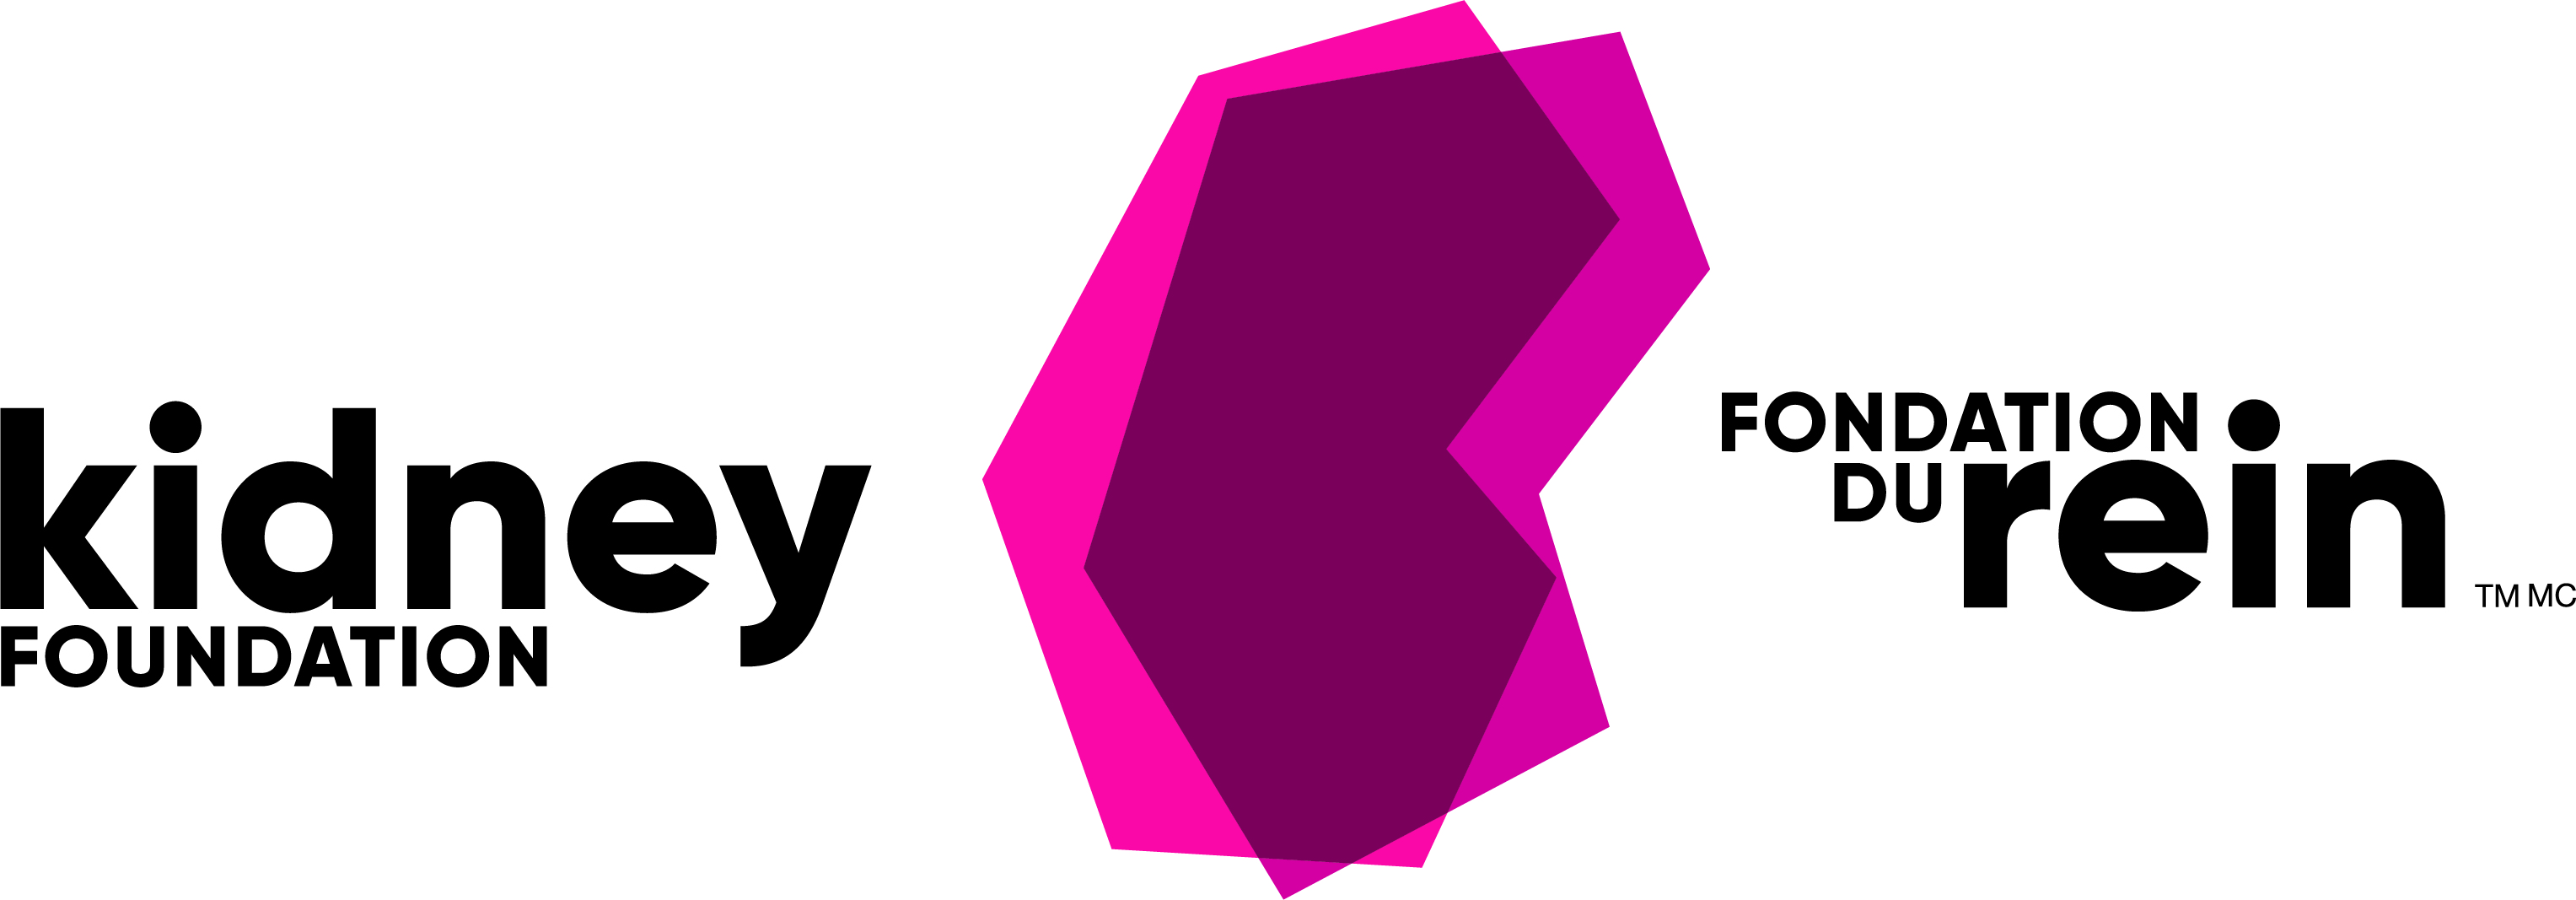 Kidney-Foundation-logo